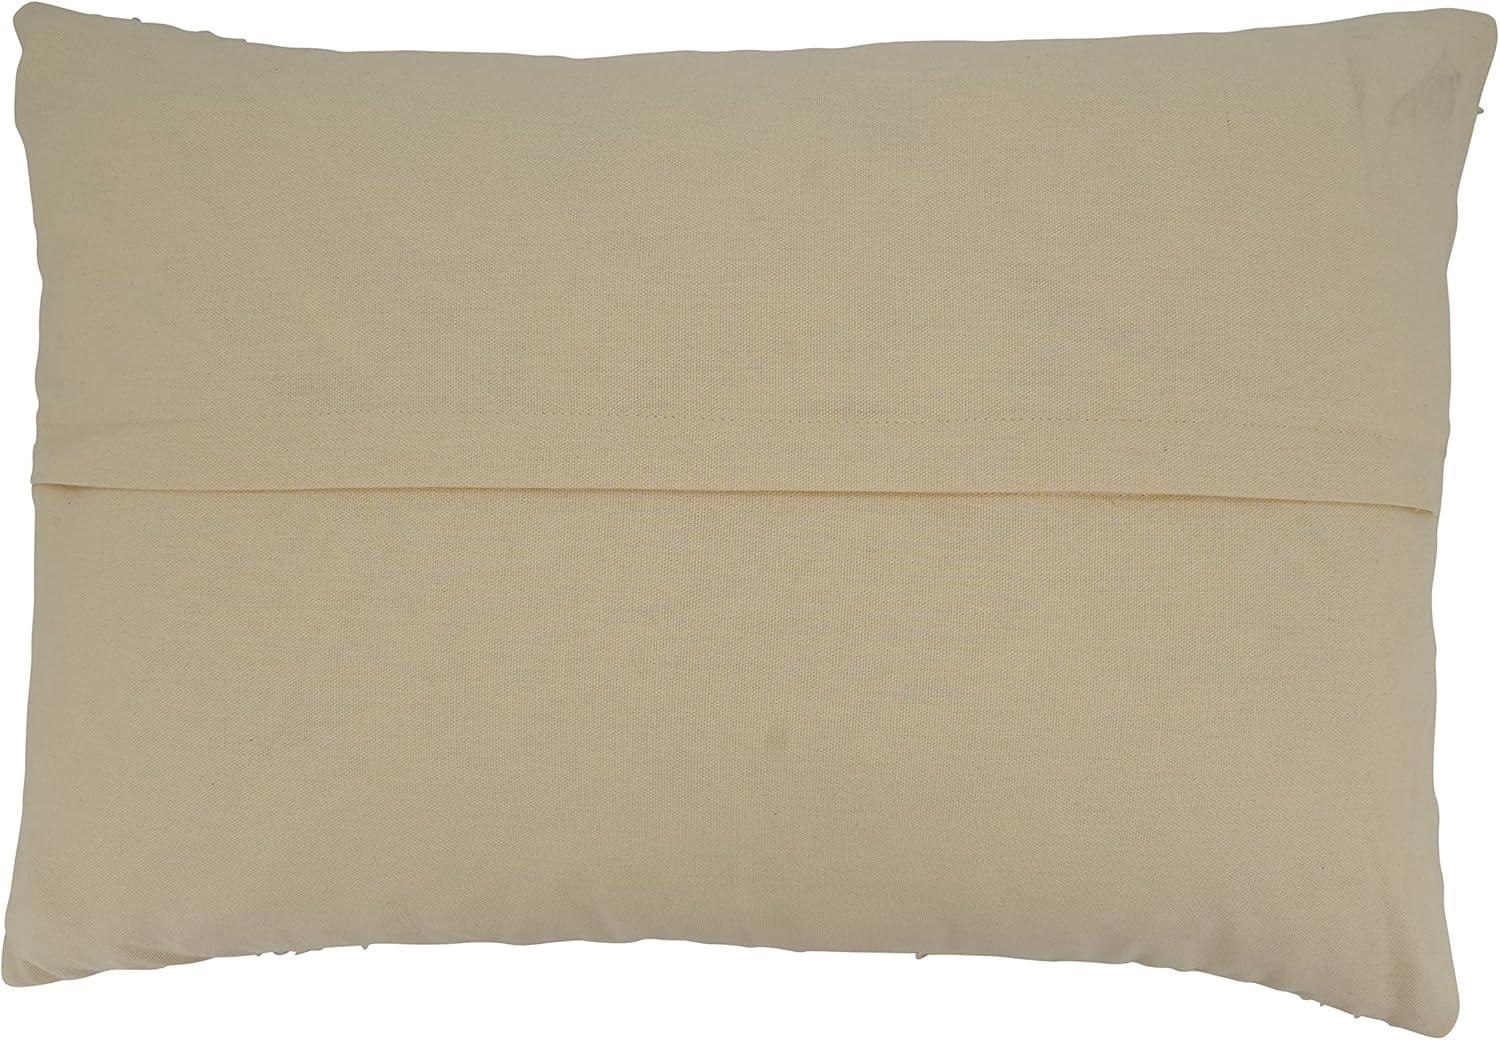 Bright Tones Wide Stripe 16"x24" Cotton Pillow Cover